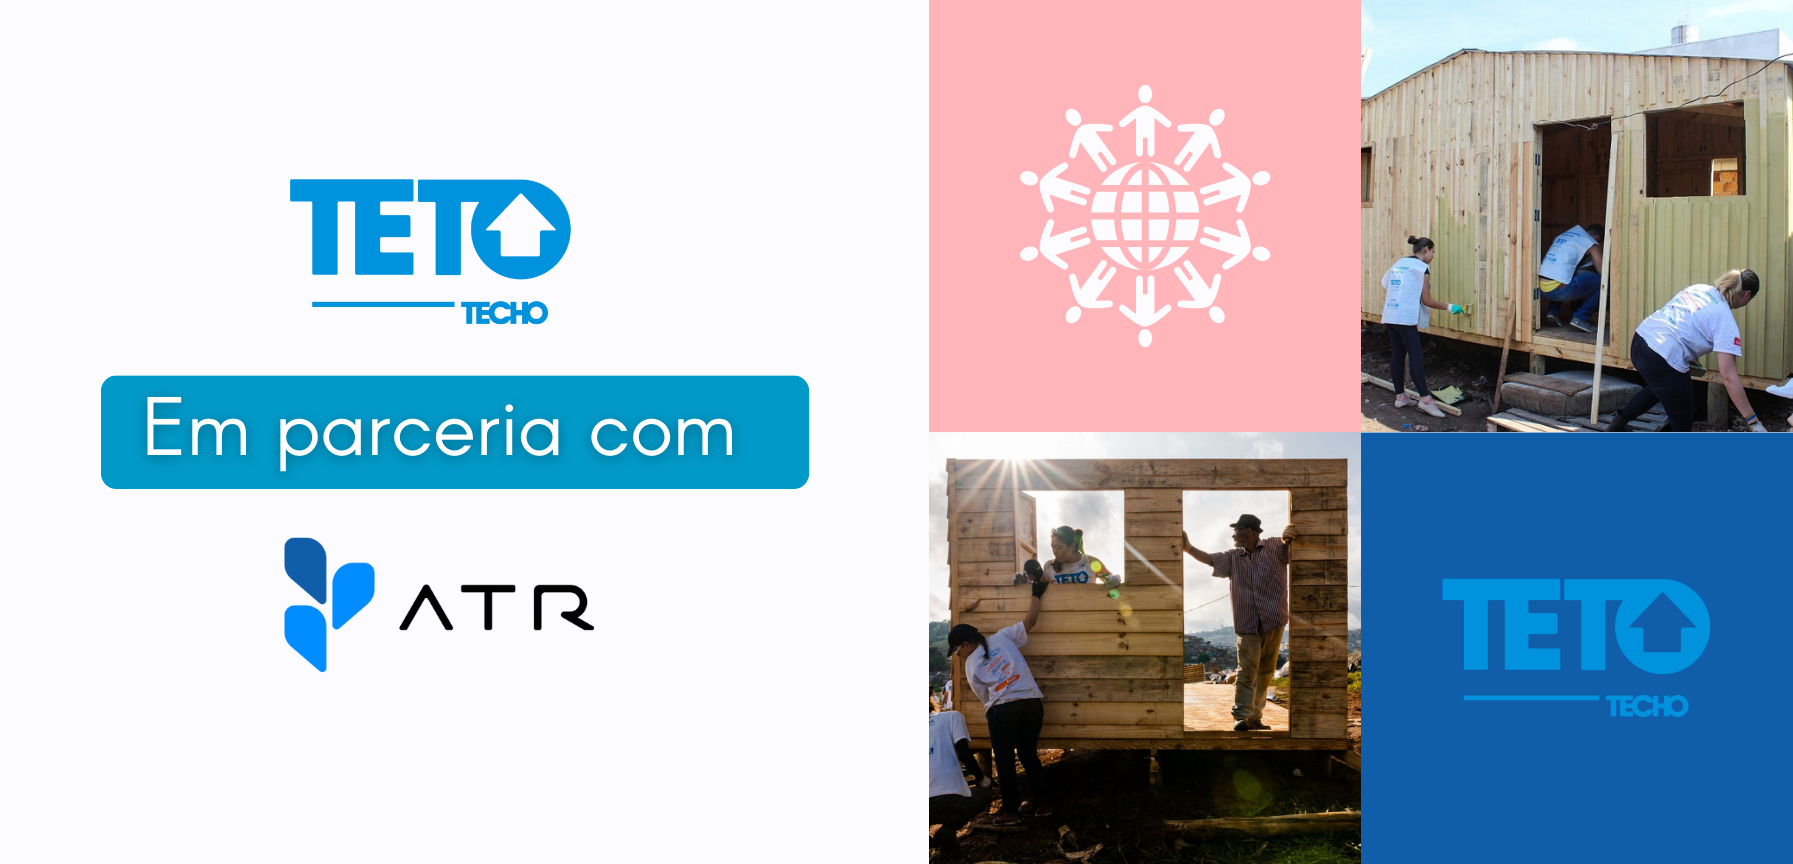 ATR Incorporadora firma parceria com ONG Teto Brasil para contribuir com melhores condições de moradia no país